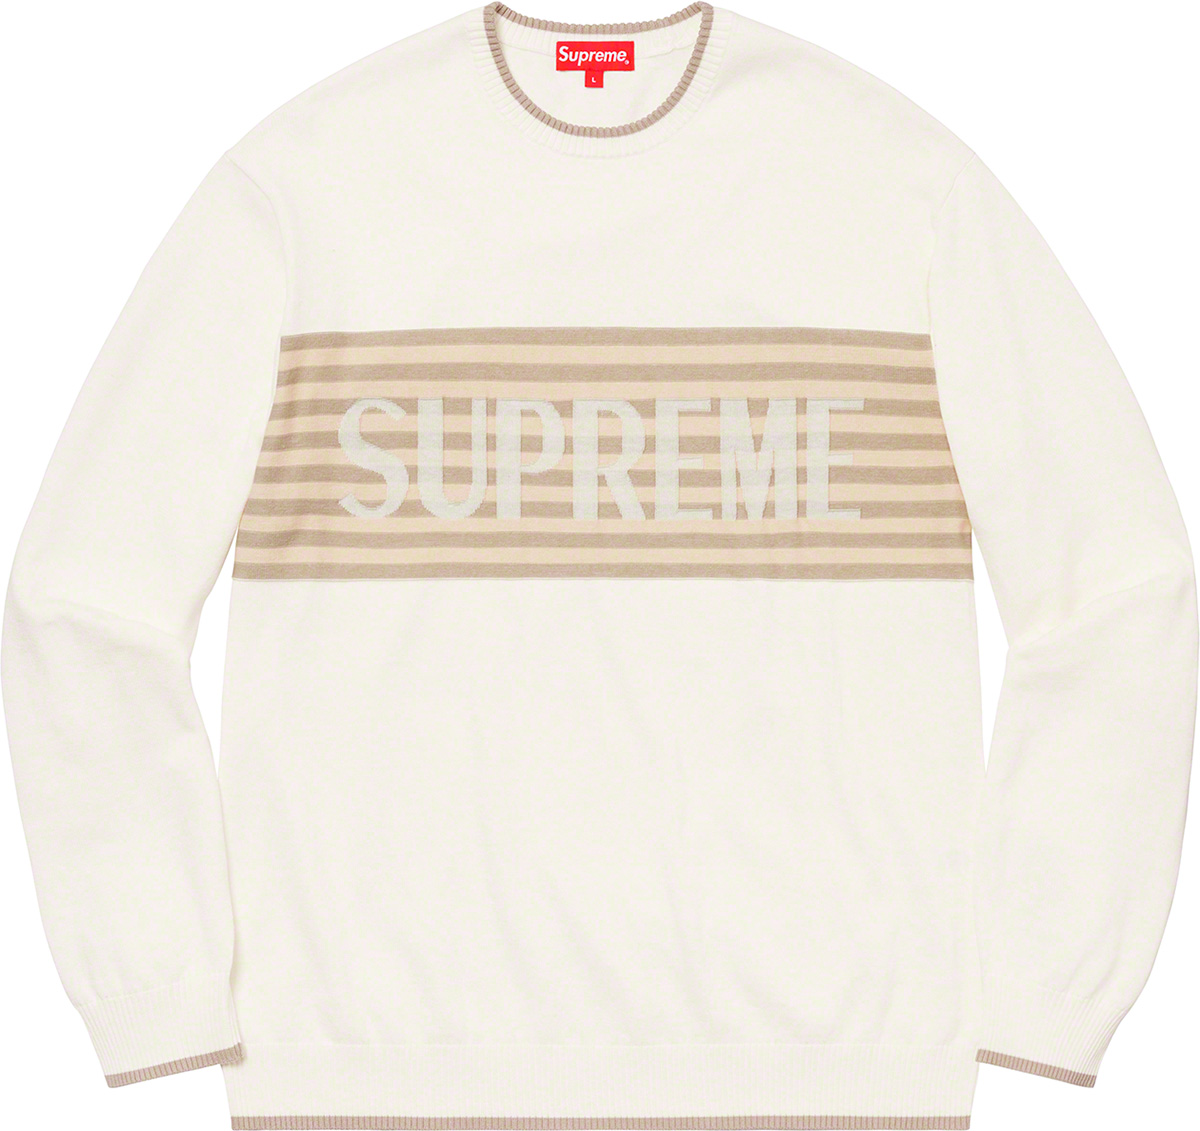 Chest Stripe Sweater - Supreme Community